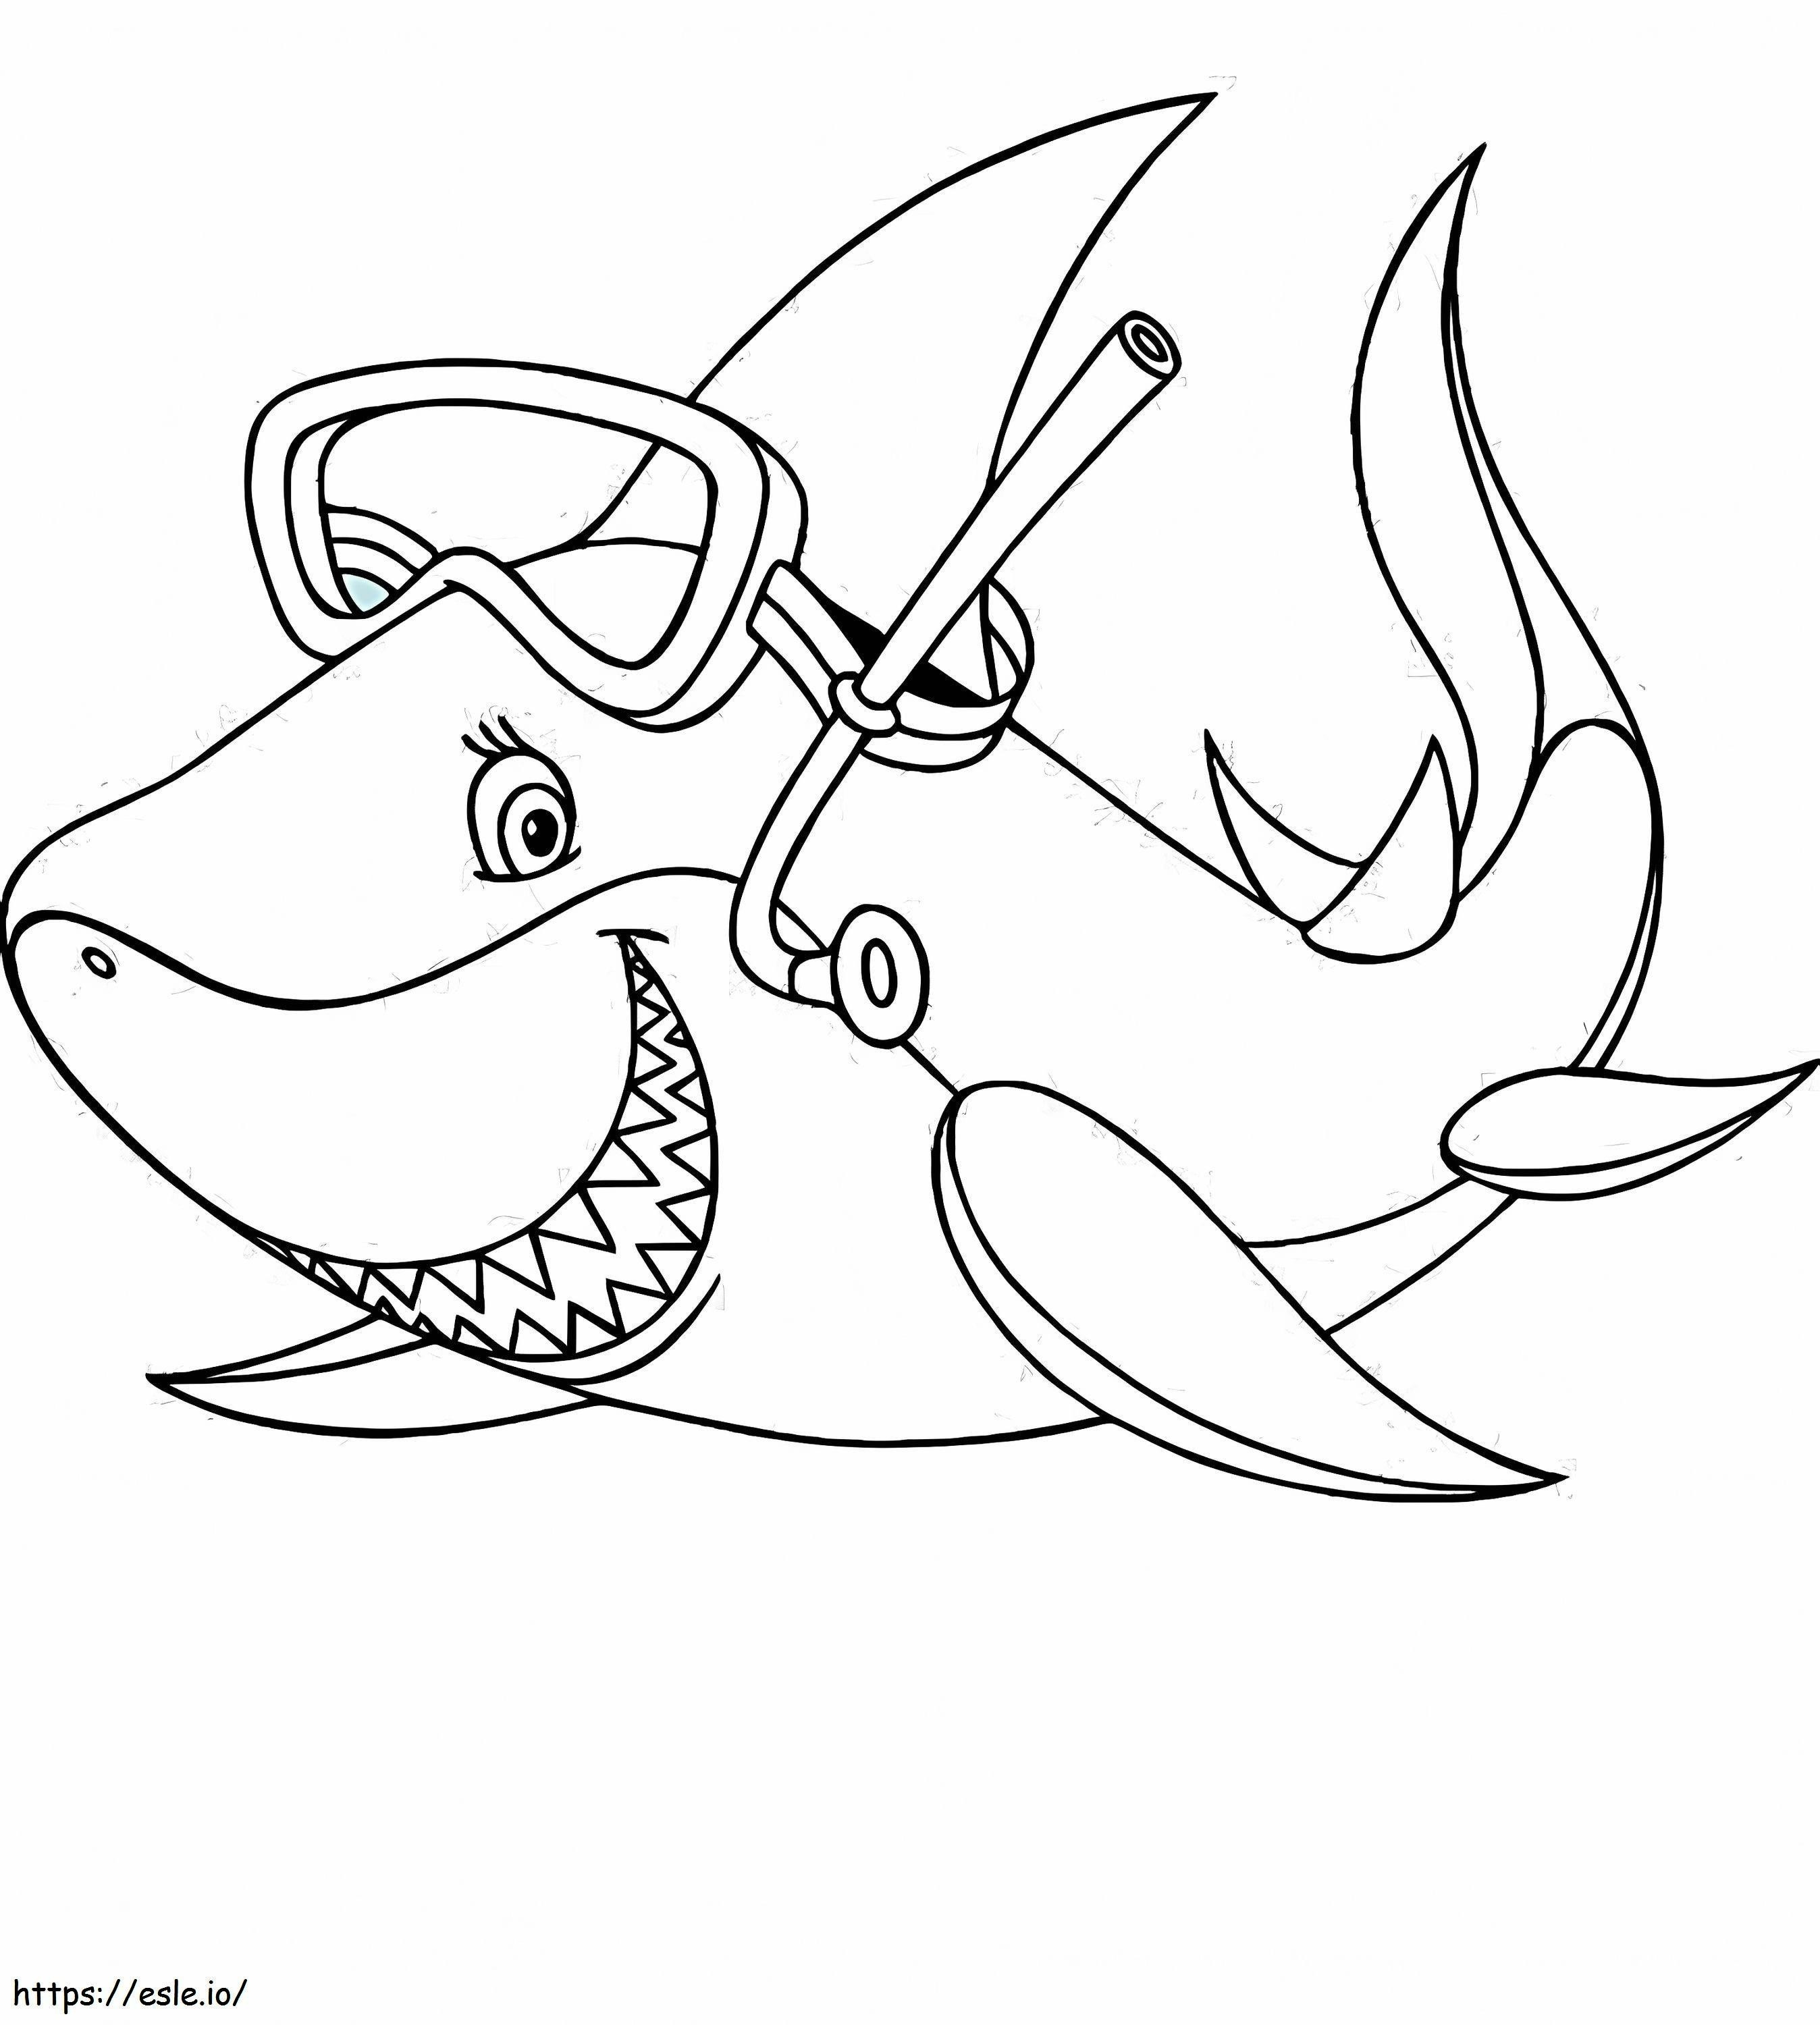 1541748815_Página para colorir de um tubarão Novo tubarão de um tubarão para colorir